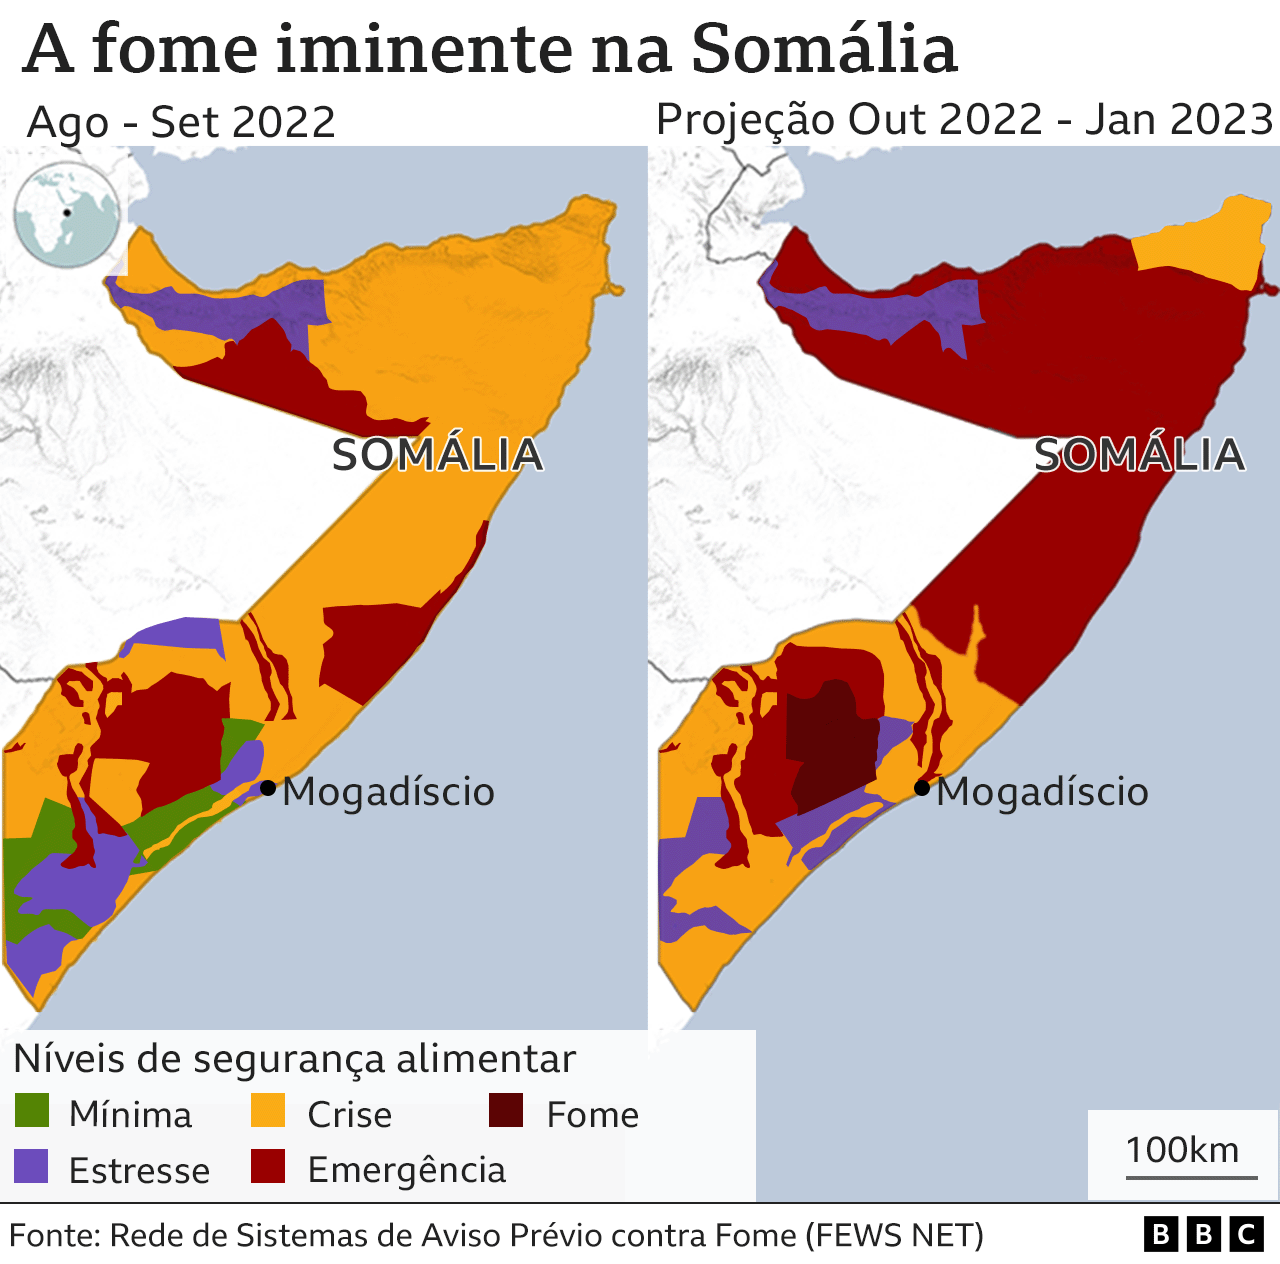 Mapa da Somália projetando aumento da fome nos próximos meses